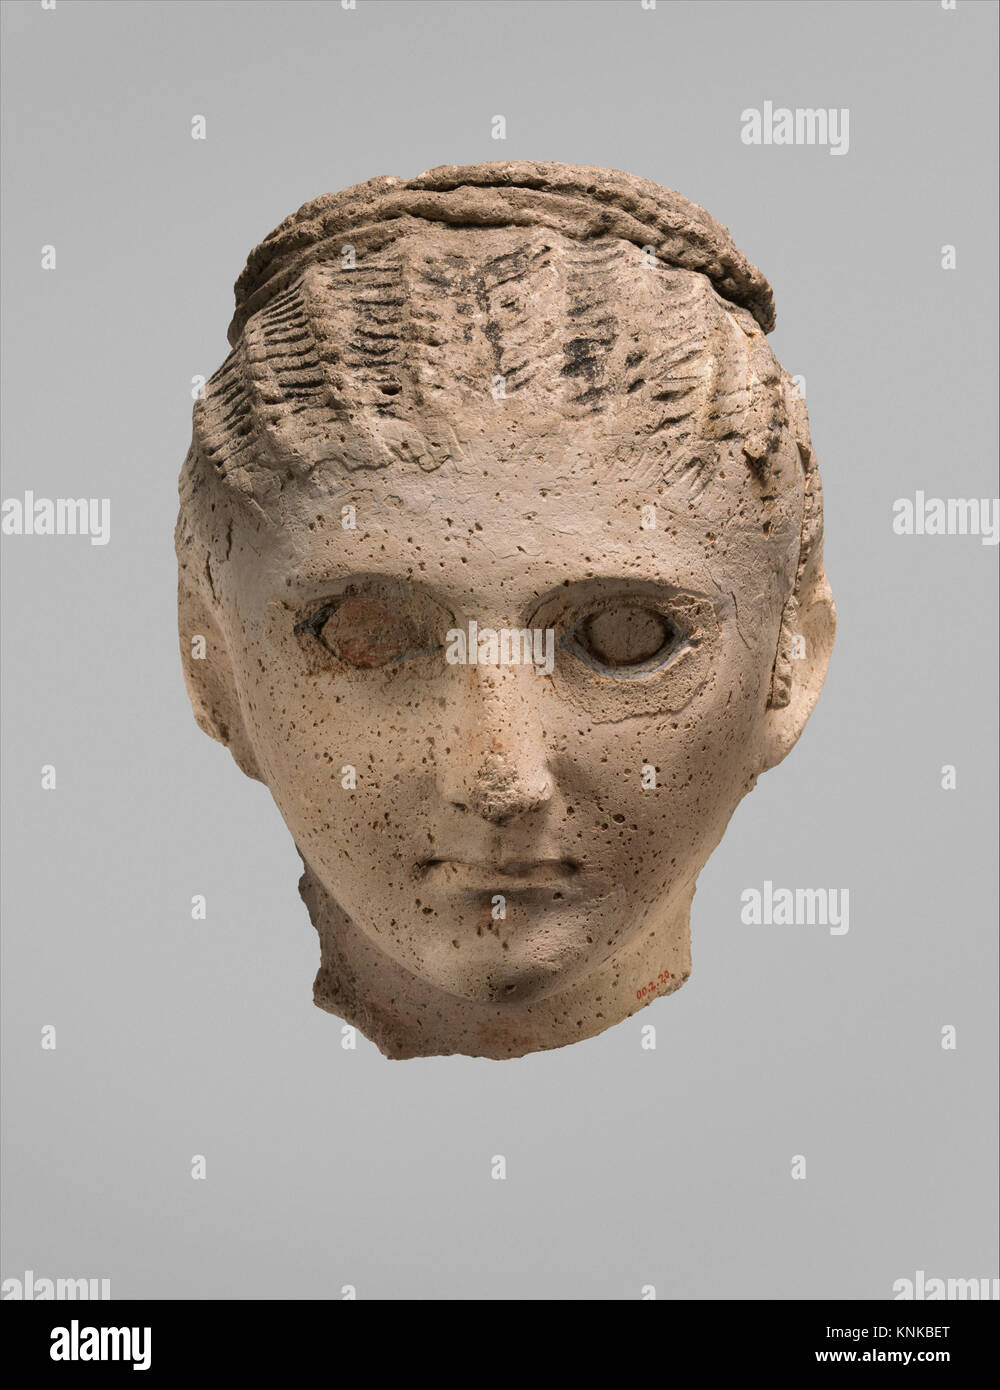 Masque funéraire, période romaine, A.D. 1e-4e siècle, d'Egypte, médium :  plâtre, peinture Photo Stock - Alamy